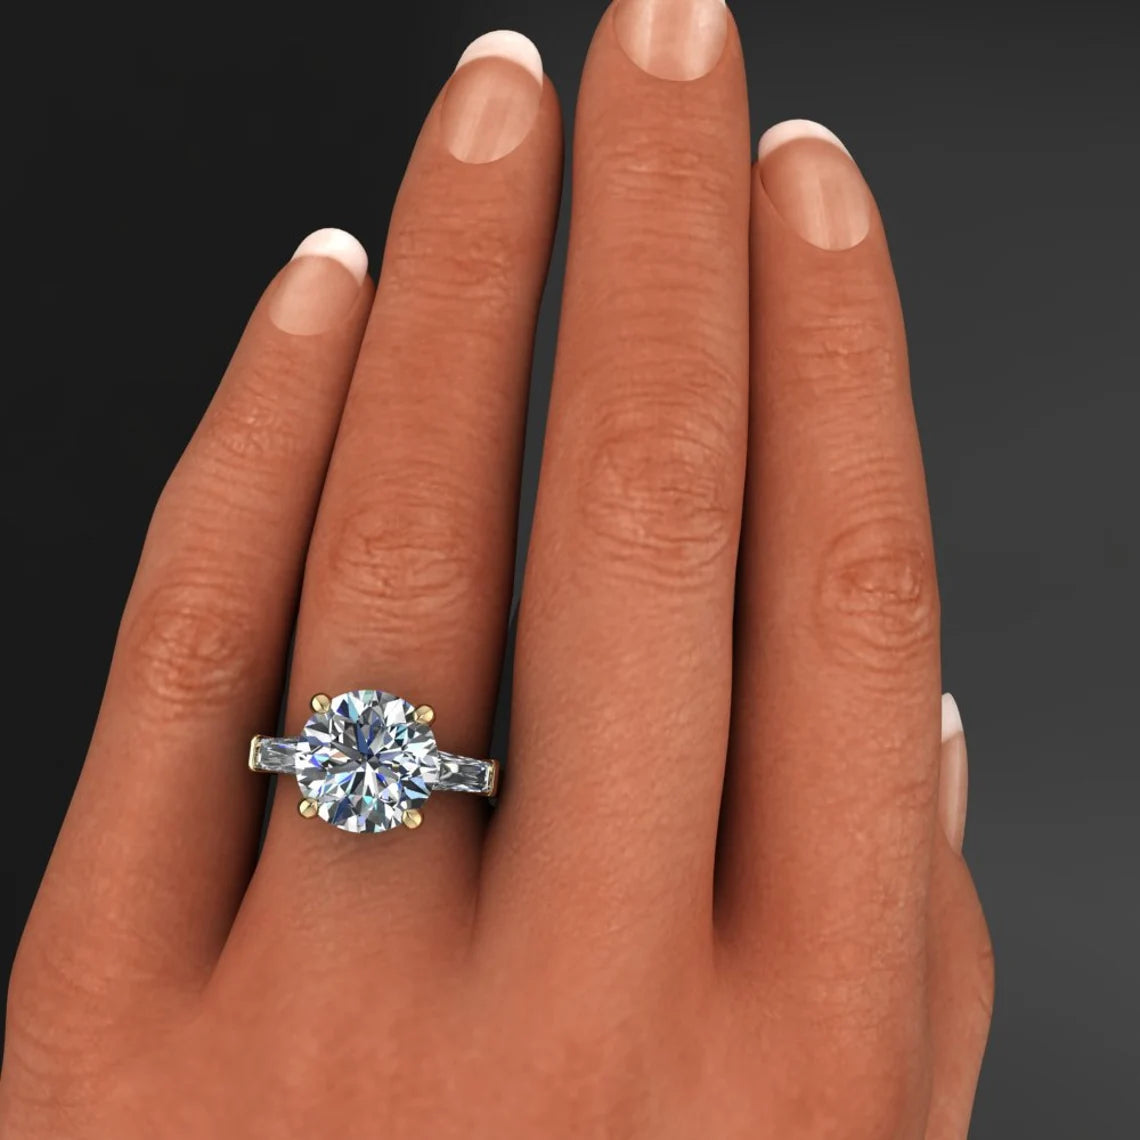 Sicilia: 4 carat tear drop diamond engagement ring | Nature Sparkle